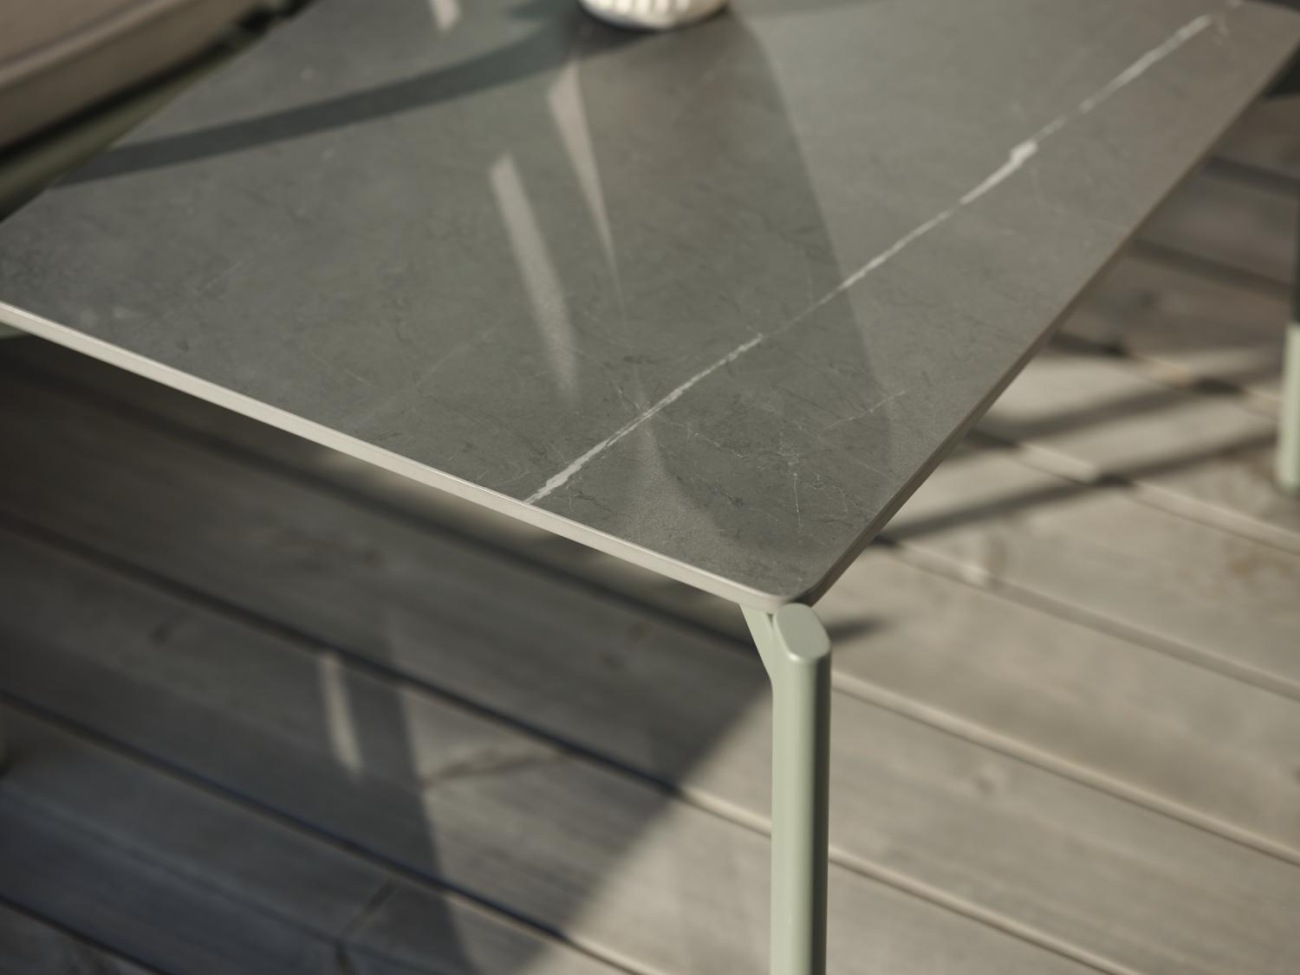 Der Gartencouchtisch Gotland überzeugt mit seinem modernen Design. Gefertigt wurde die Tischplatte aus Granit und besitzt einen grauen Farbton. Das Gestell ist auch aus Metall und hat eine grüne Farbe. Der Tisch besitzt eine Länger von 162 cm.